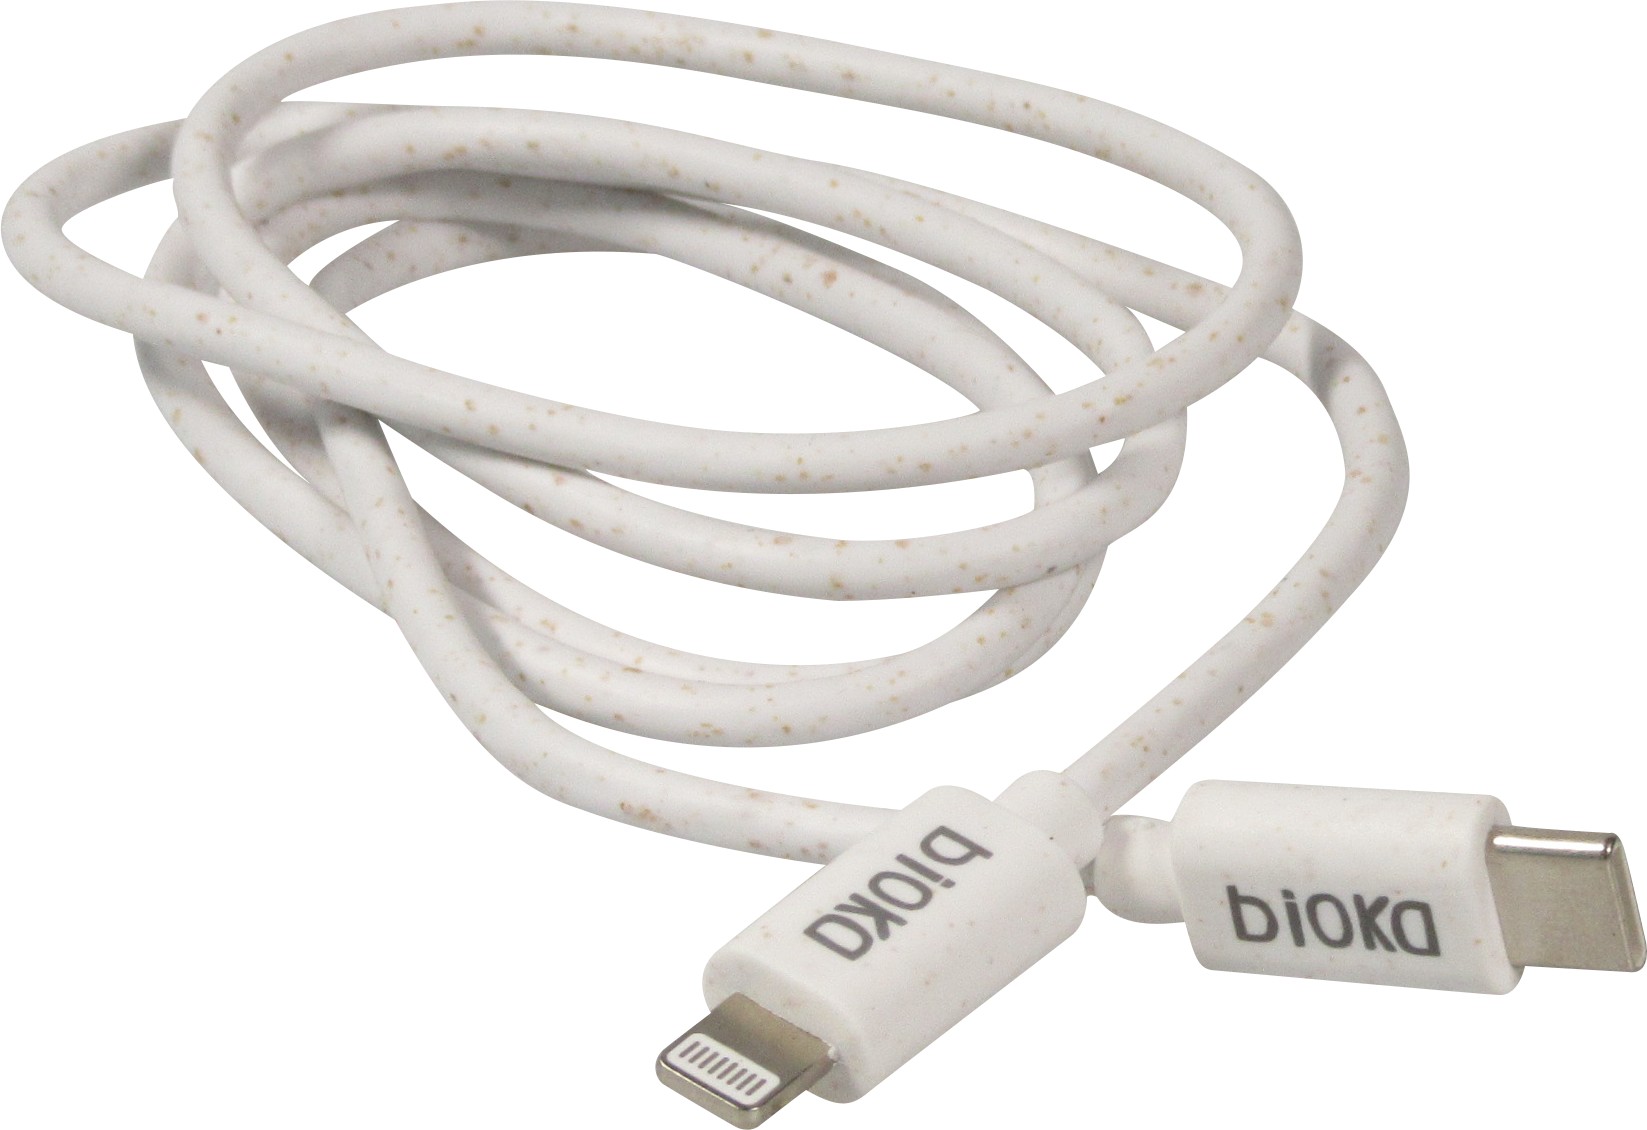 Chargeur USB-C 20W avec câble de charge USB-C vers Lightning (iPhone) de 1  m - Blanc - Acheter sur PhoneLook